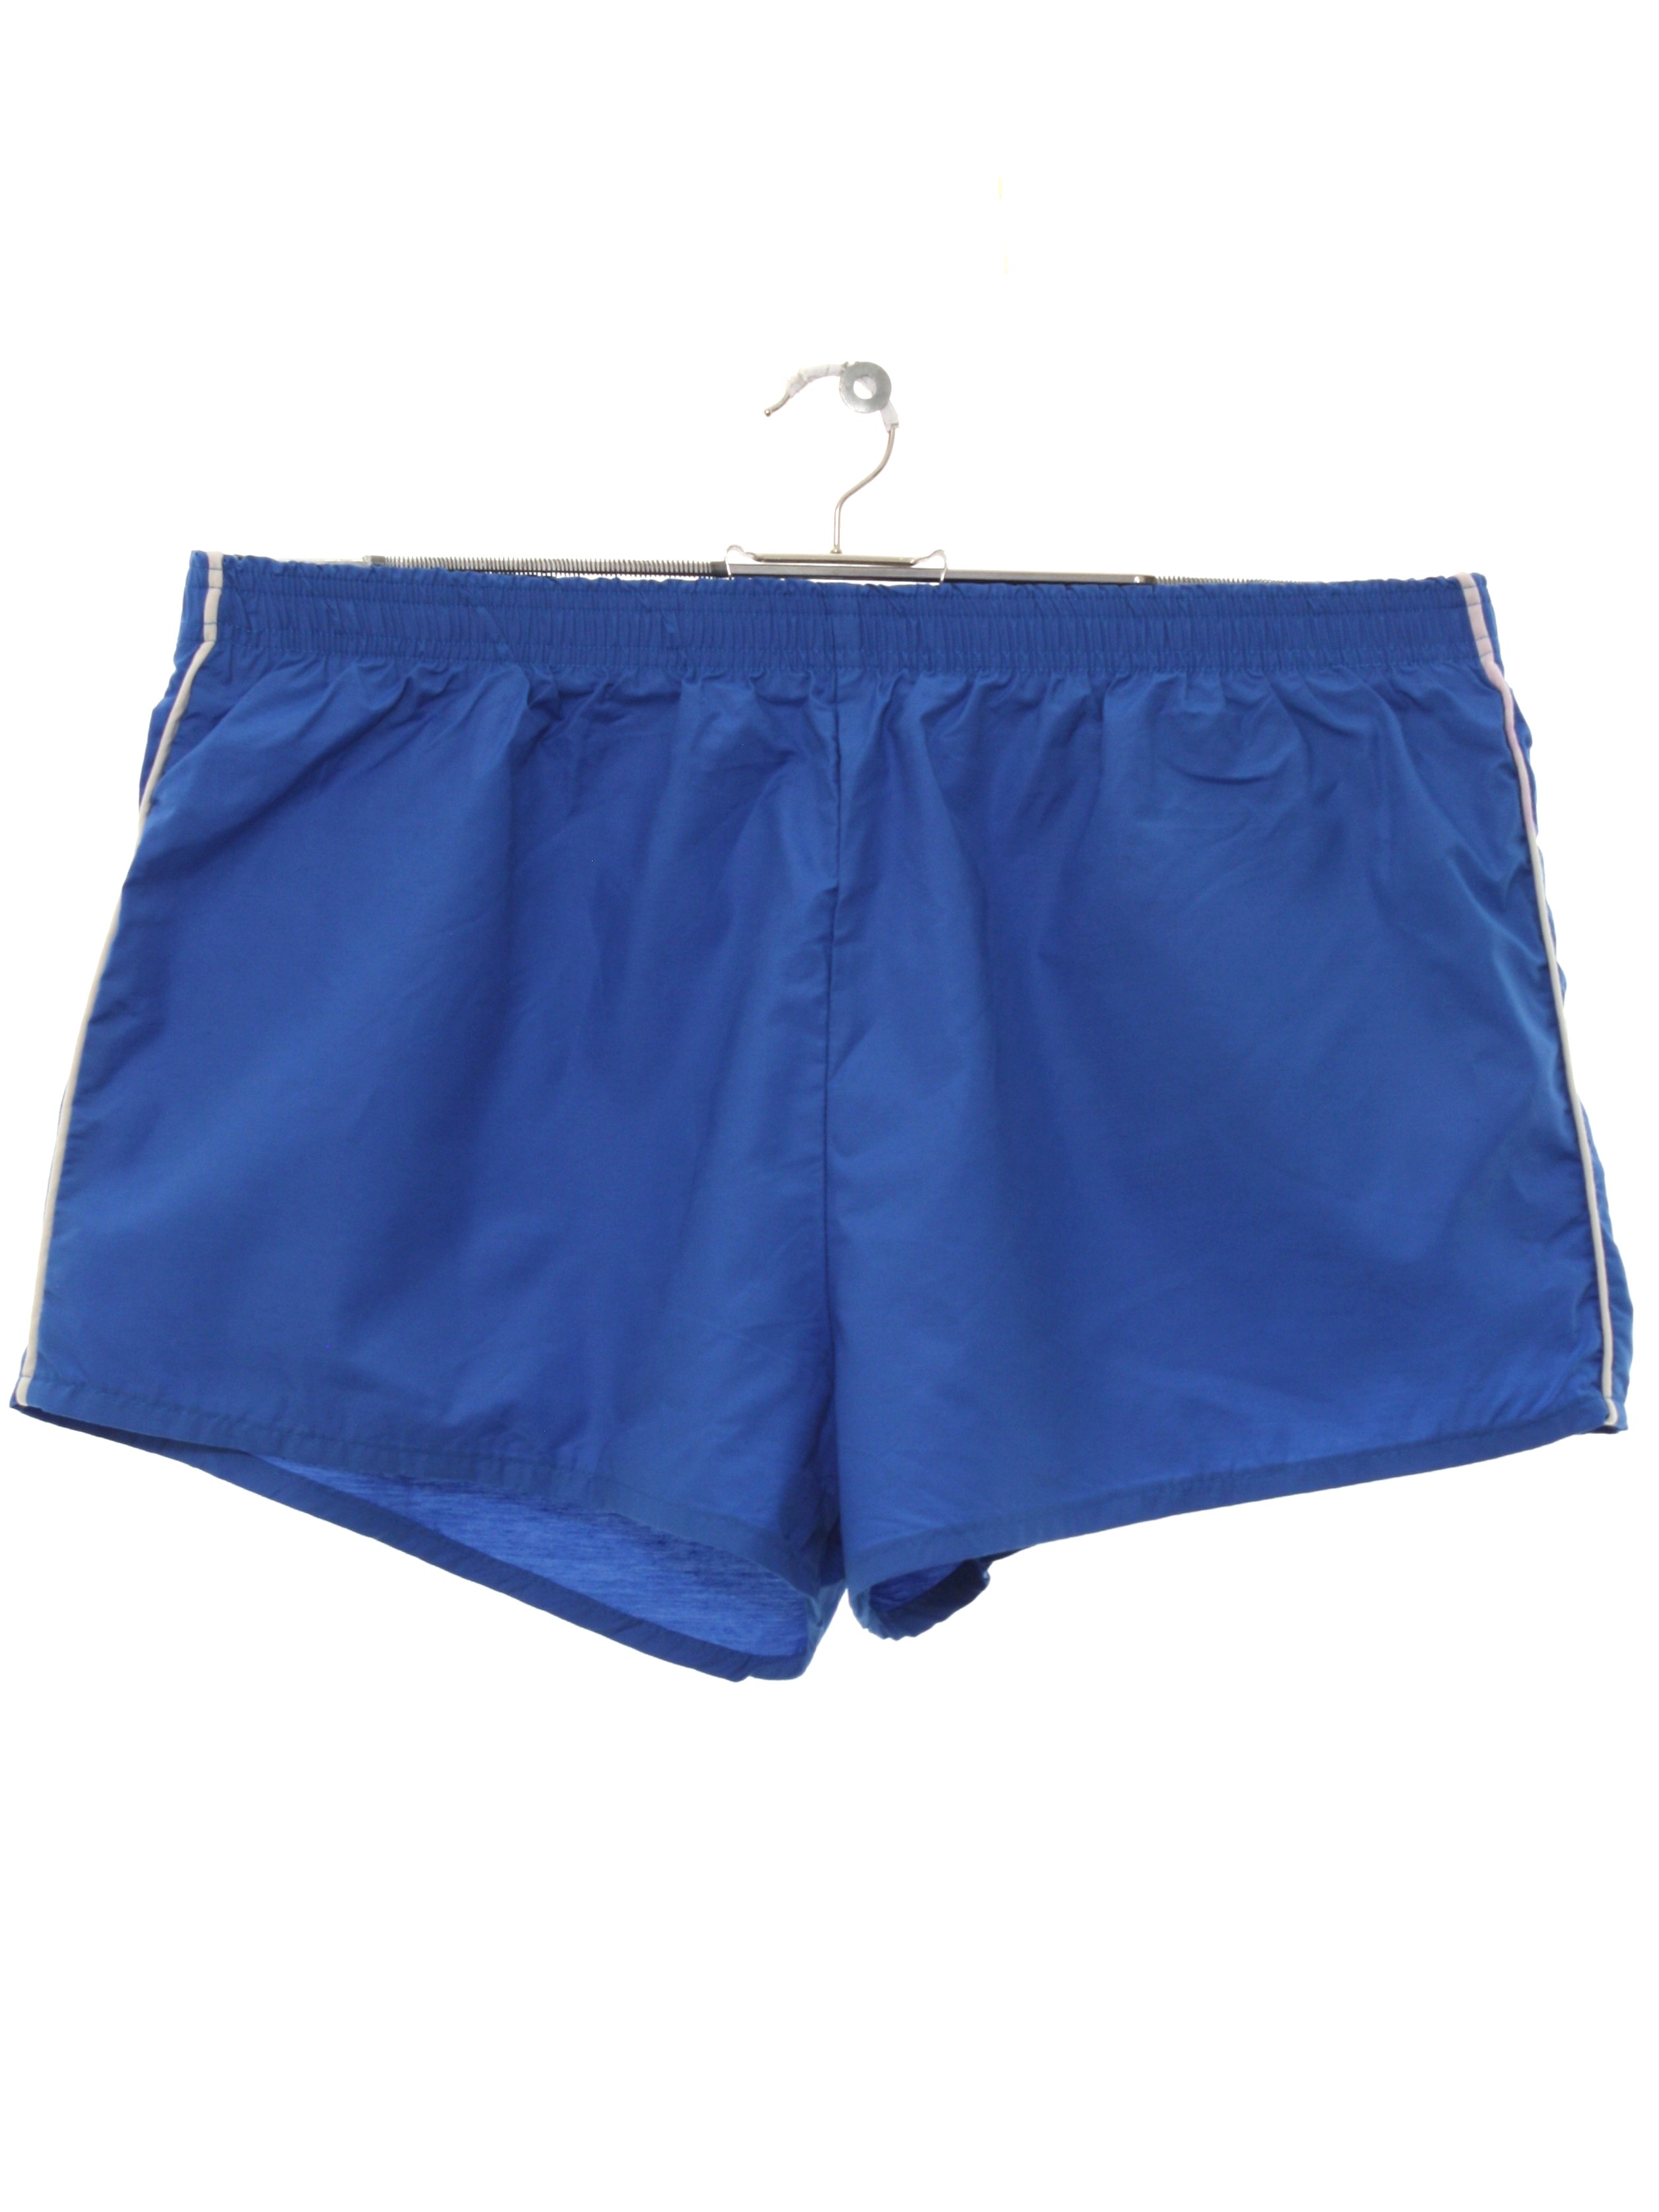 Retro 1980's Shorts (Care Label) : 80s -Care Label- Mens blue nylon ...